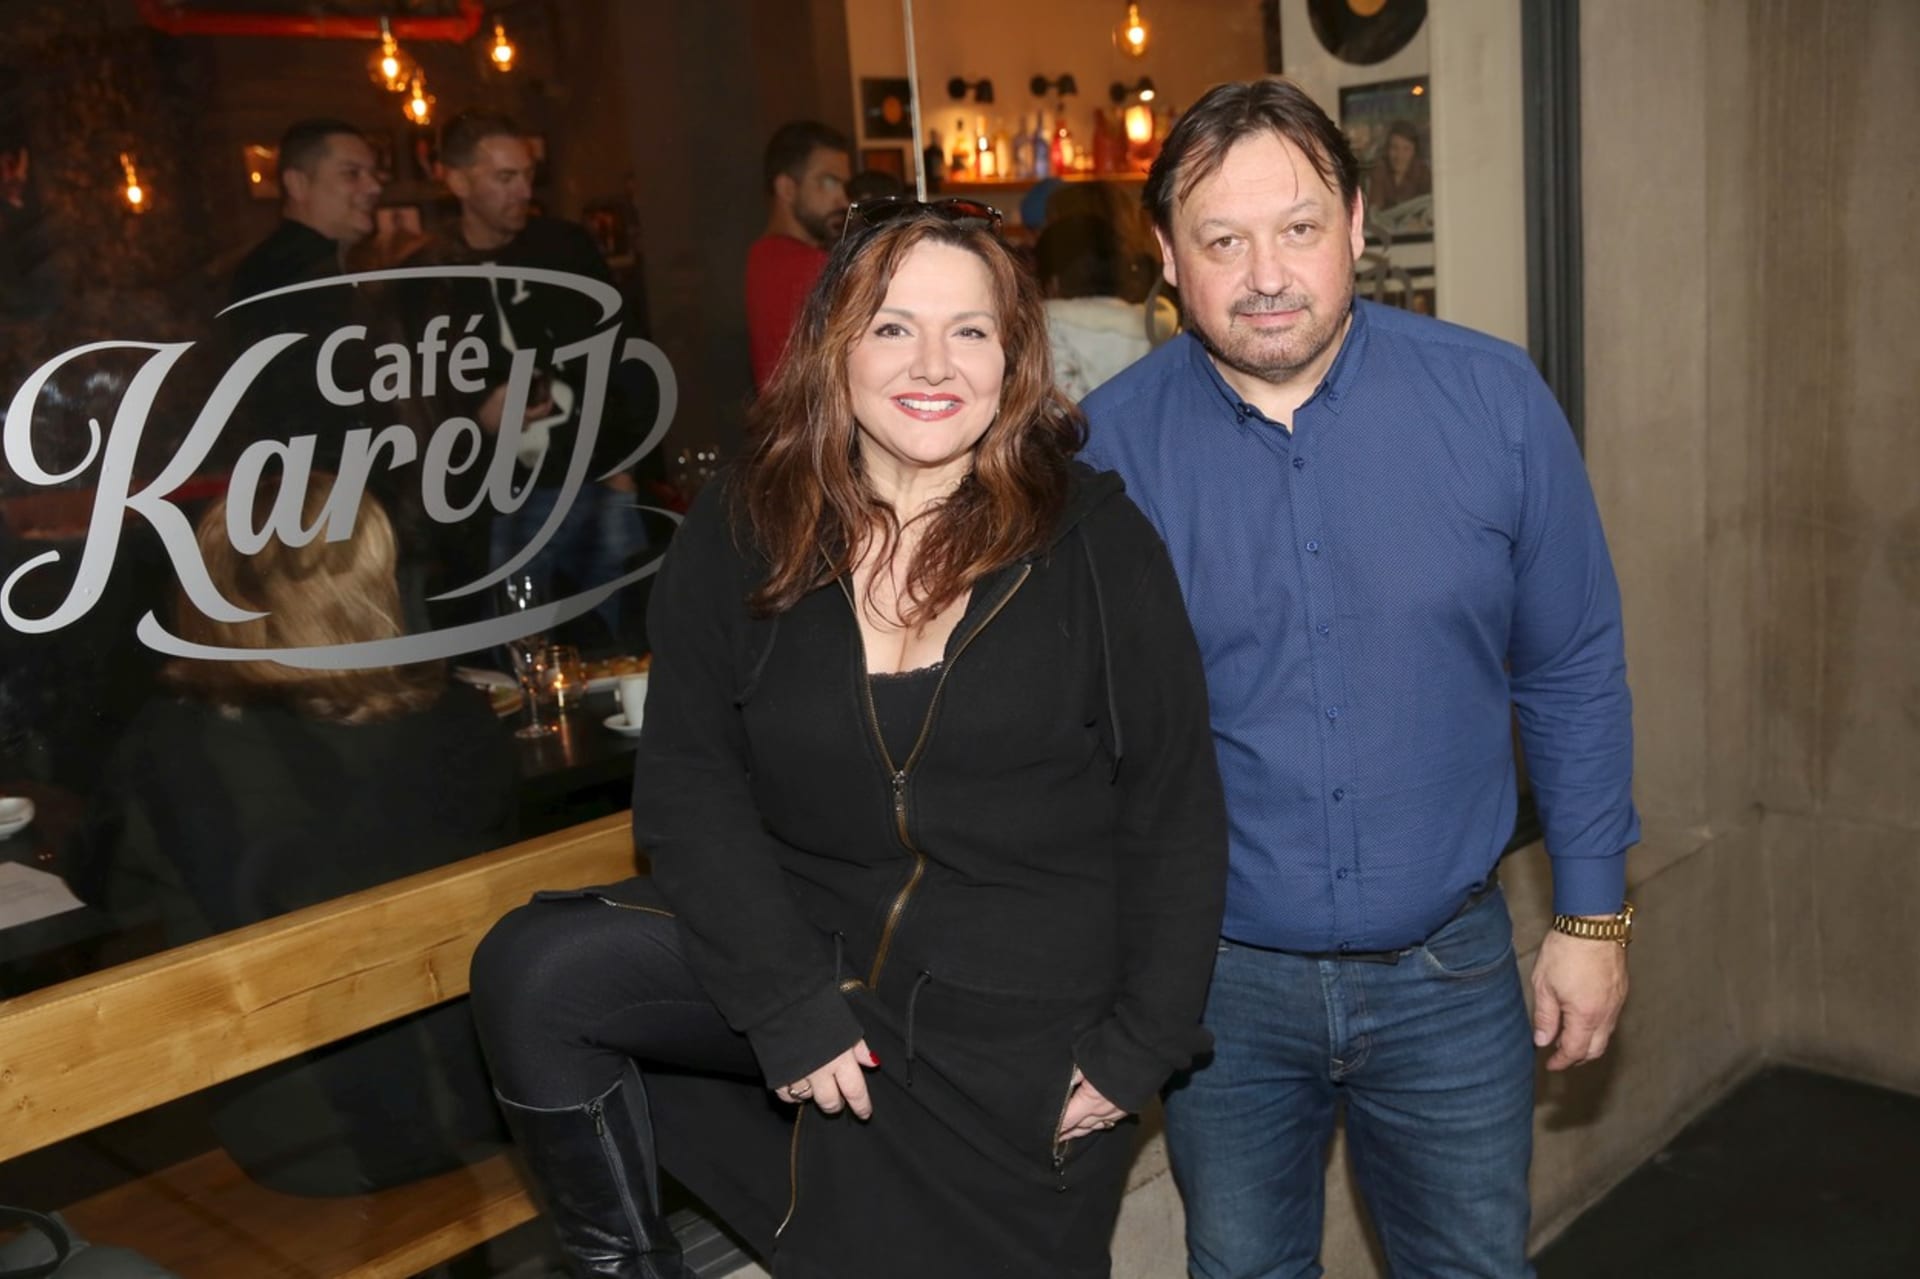 Kavárnu Café Karel doposud provozoval Miroslav Kolodziej se svou partnerkou Šárkou Rezkovou. Nyní však končí.